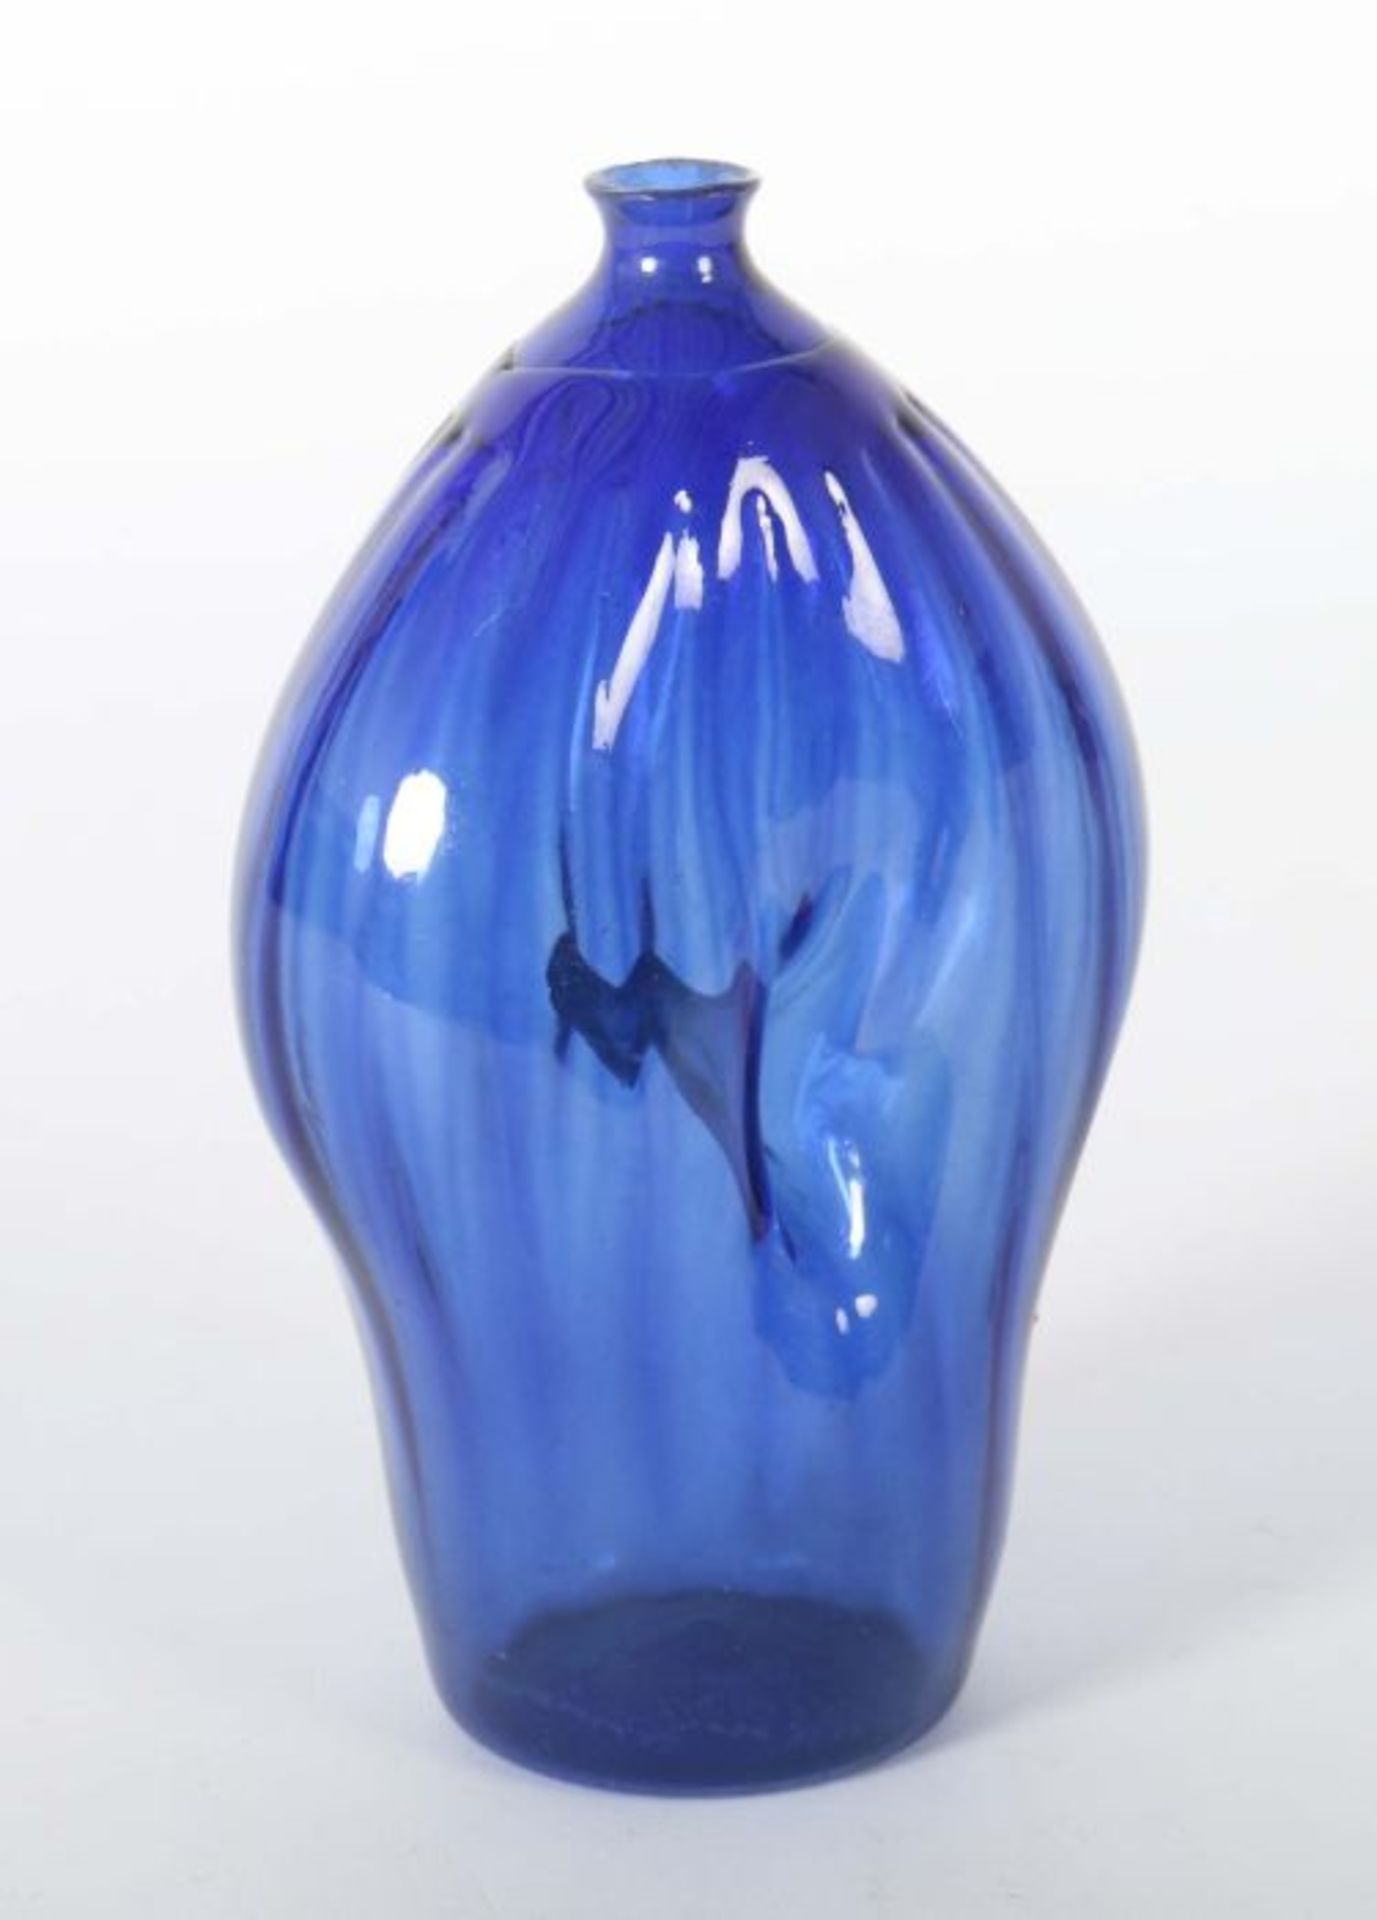 Nabelflasche Alpenländisch, 19. Jh., kobaltblaues, gemodeltes Glas mit leicht hochgestochenem Boden - Bild 2 aus 2